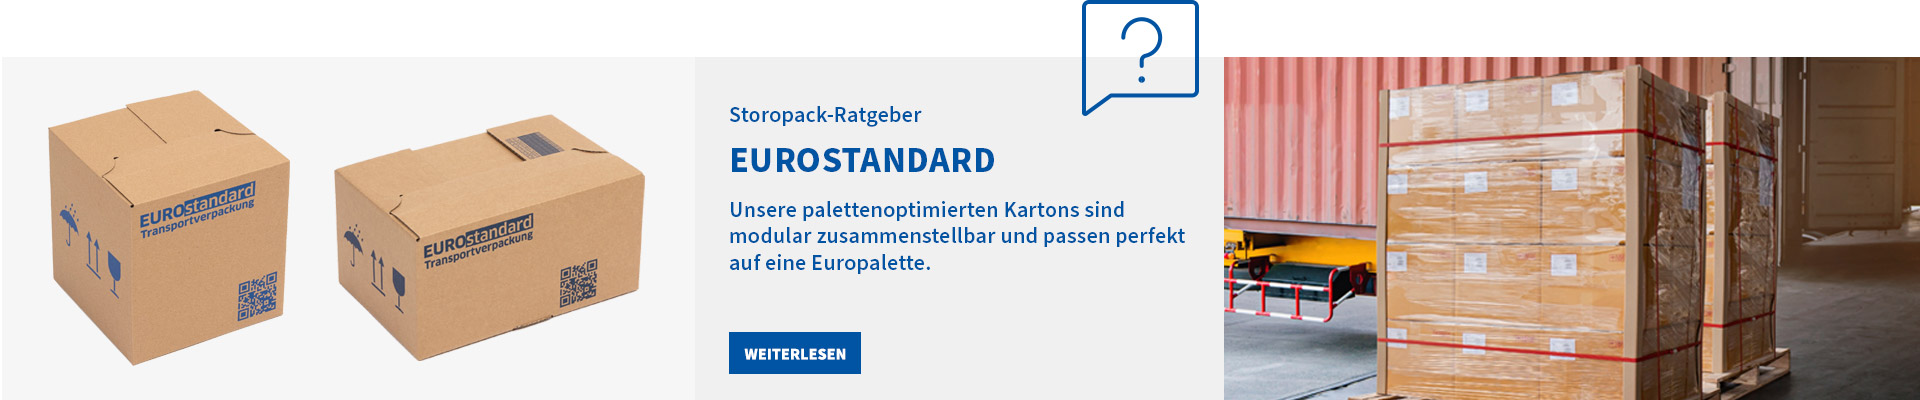 Storopack-Ratgeber: Eurostandard